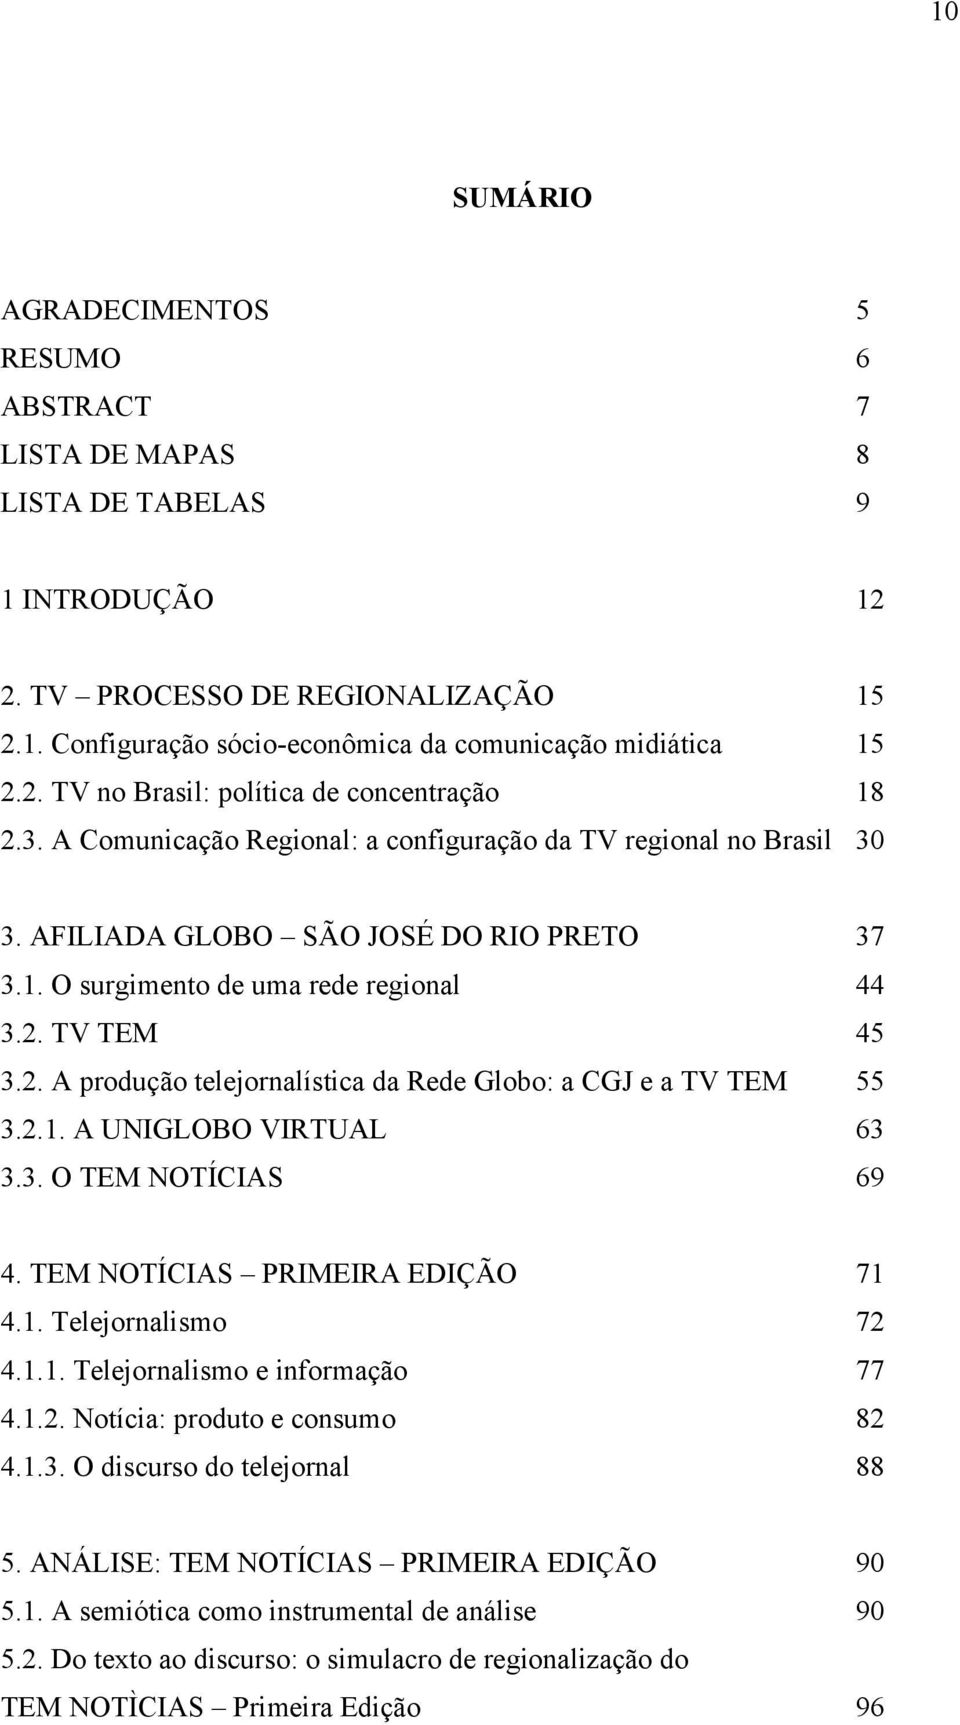 2. TV TEM 45 3.2. A produção telejornalística da Rede Globo: a CGJ e a TV TEM 55 3.2.1. A UNIGLOBO VIRTUAL 63 3.3. O TEM NOTÍCIAS 69 4. TEM NOTÍCIAS PRIMEIRA EDIÇÃO 71 4.1. Telejornalismo 72 4.1.1. Telejornalismo e informação 77 4.